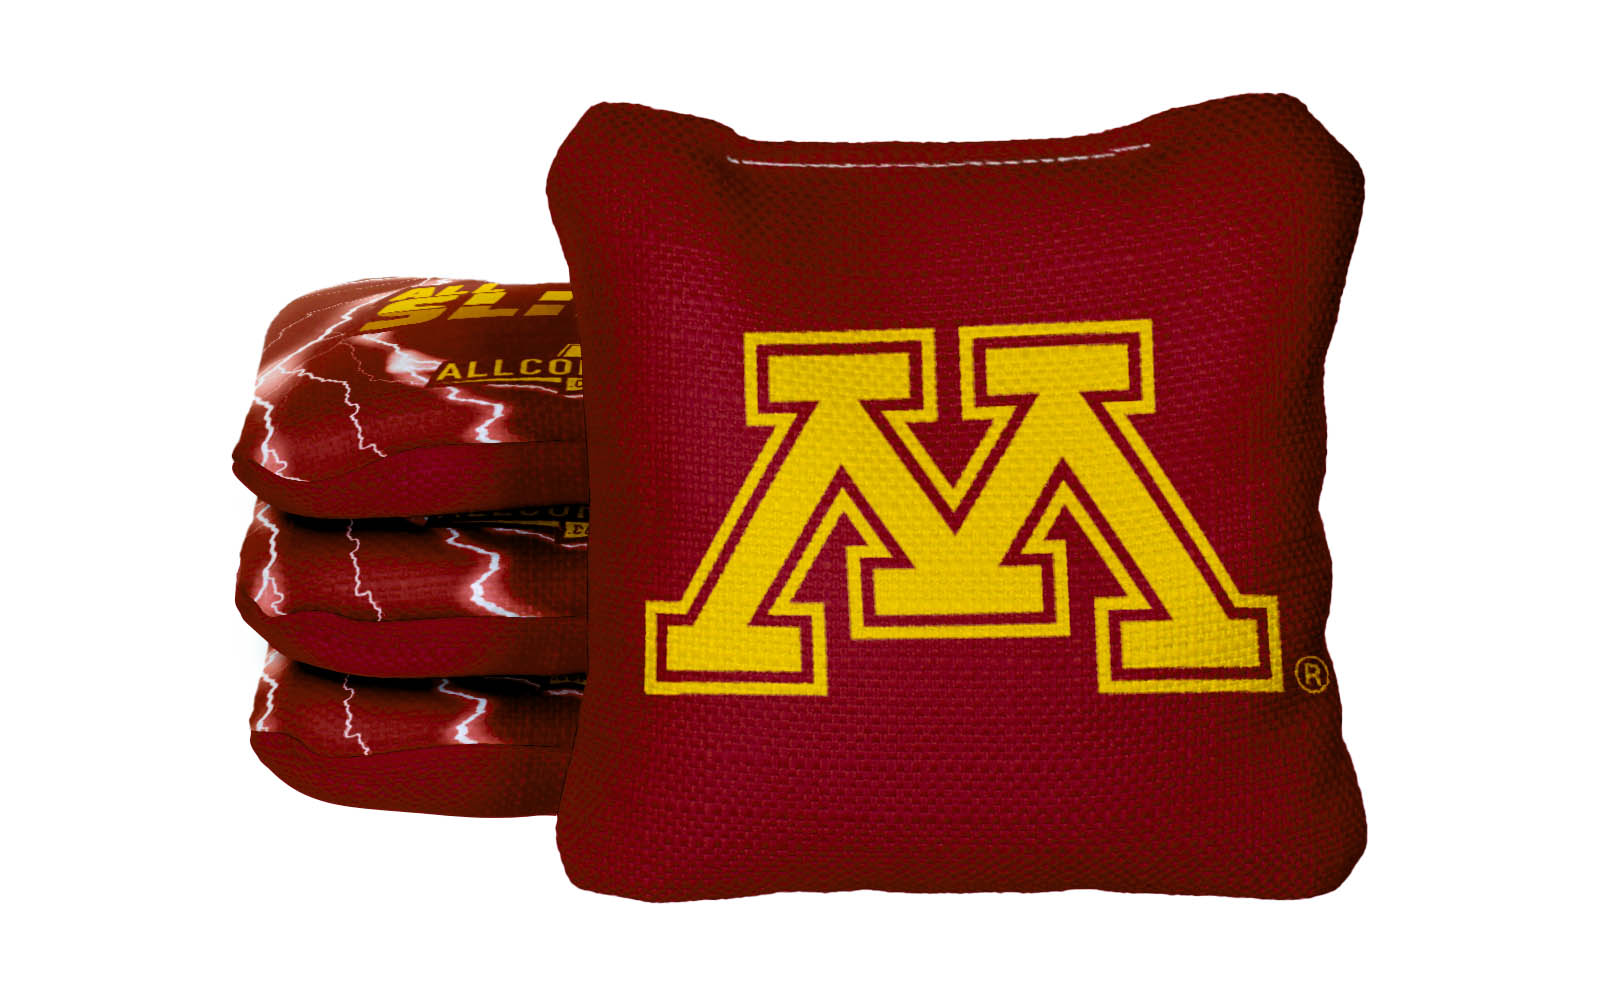 Officially Licensed Collegiate Cornhole Bags - All-Slide 2.0 - Set of 4 - University of Minnesota